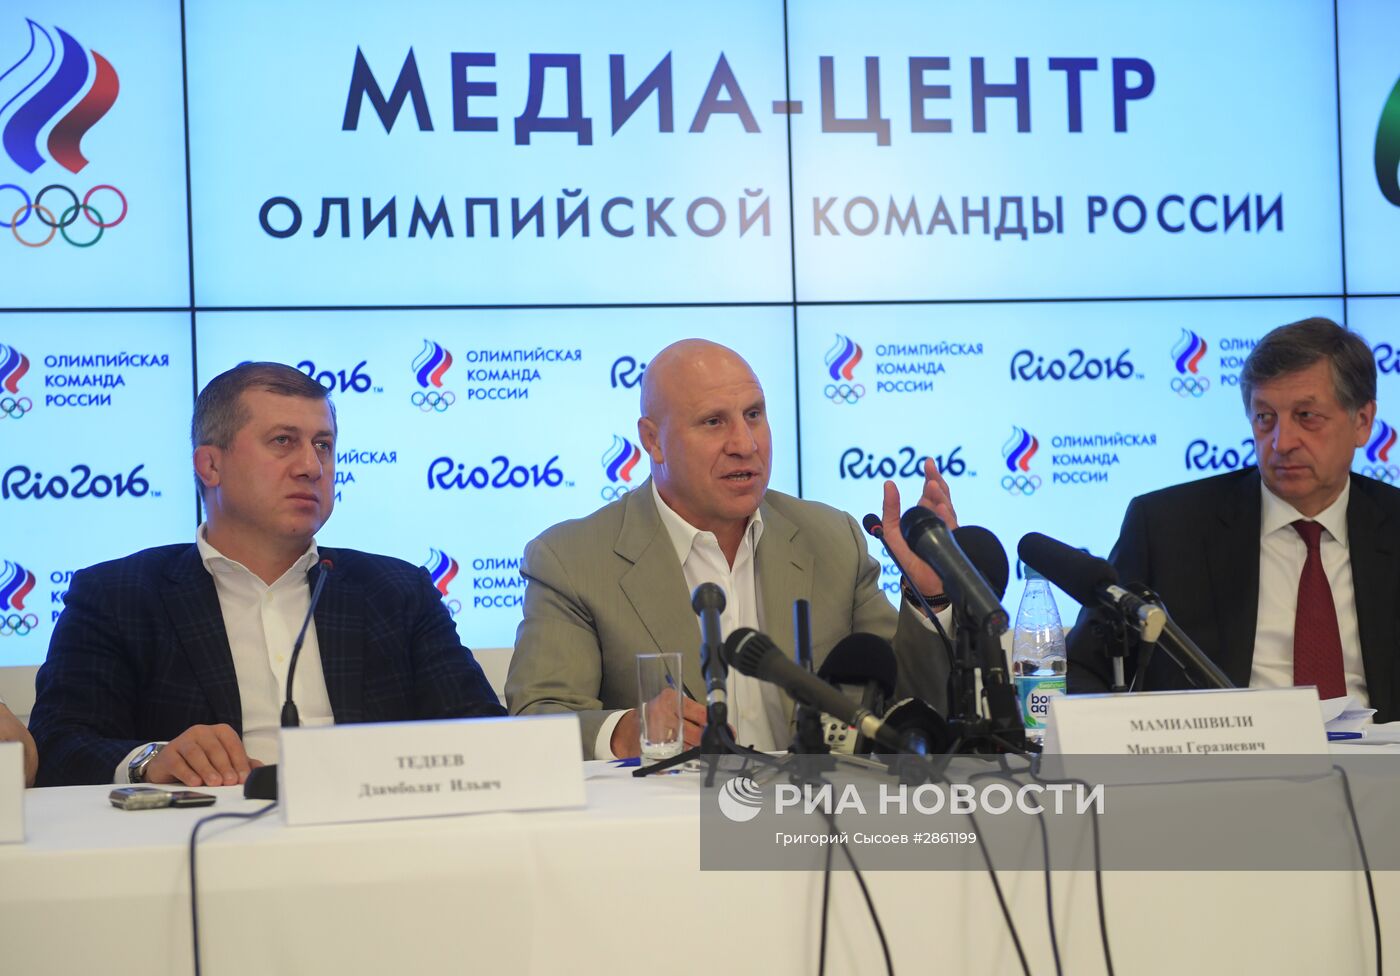 Пресс-конференция сборной России по вольной борьбе